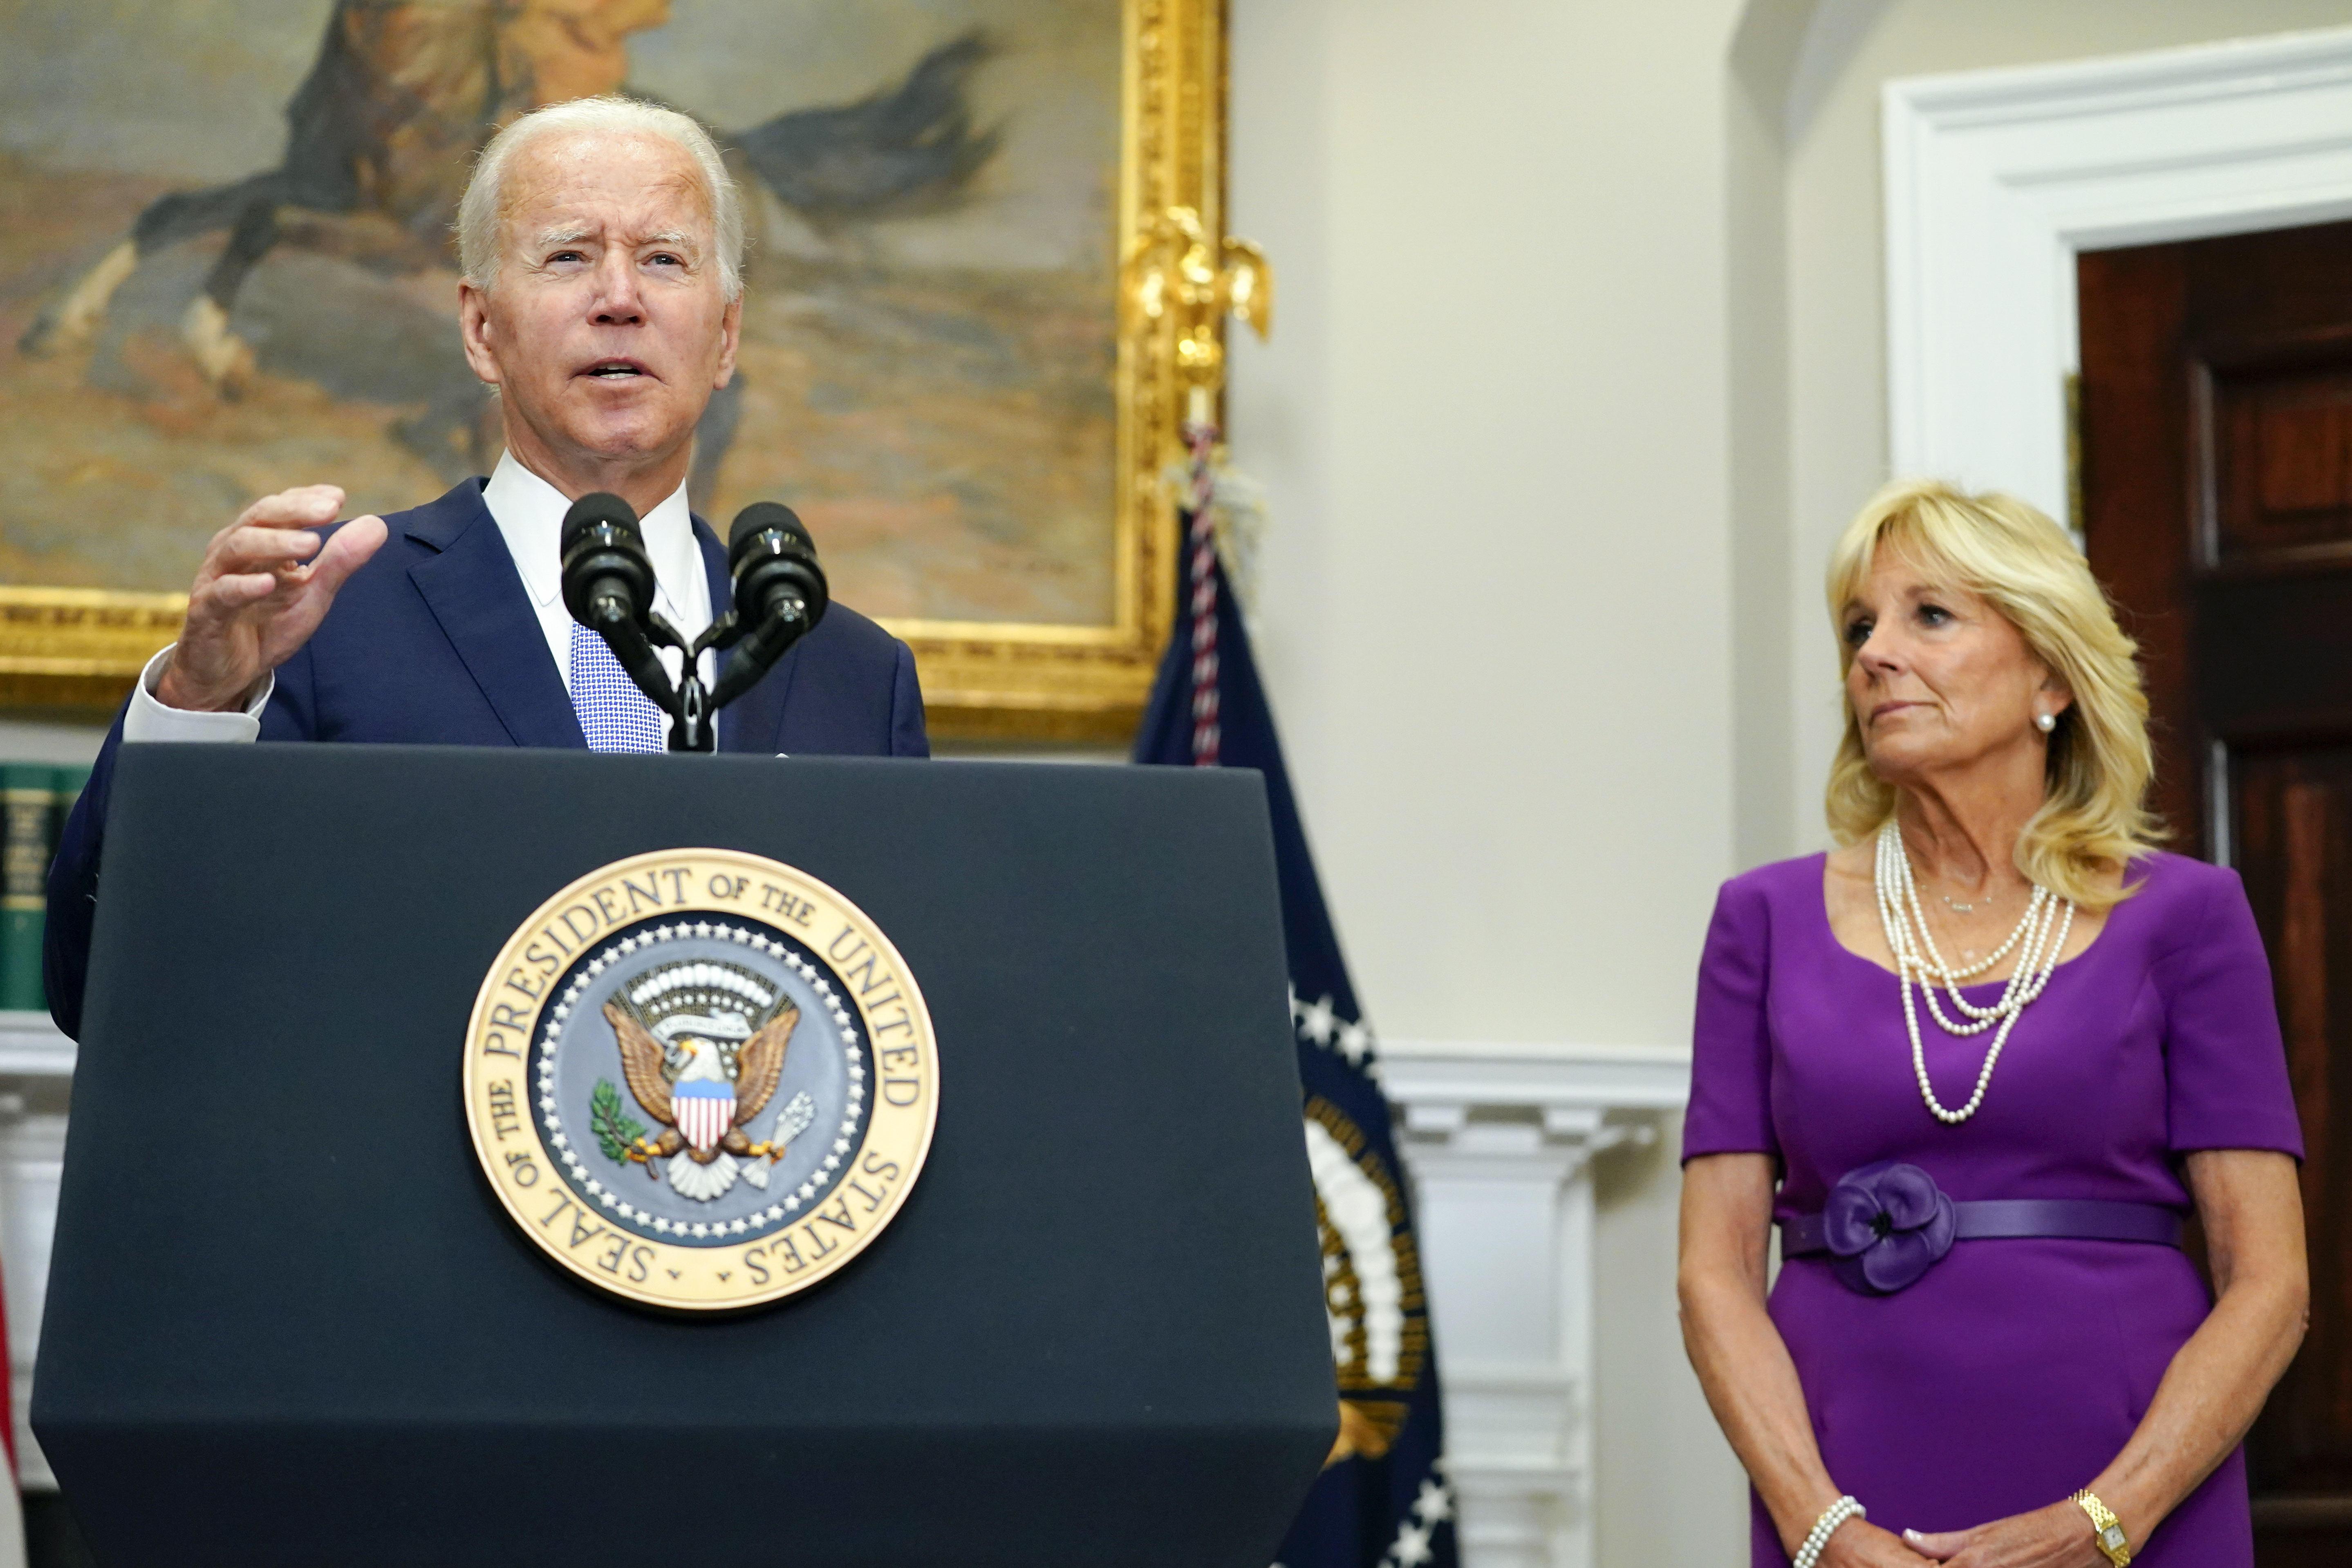 El presidente Joe Biden habla antes de promulgar la ley S. 2938, el proyecto de ley de seguridad de armas de la Ley Bipartidista de Comunidades más Seguras, en la Sala Roosevelt de la Casa Blanca en Washington, el sábado 25 de junio de 2022. La primera dama Jill Biden escucha a la derecha.  